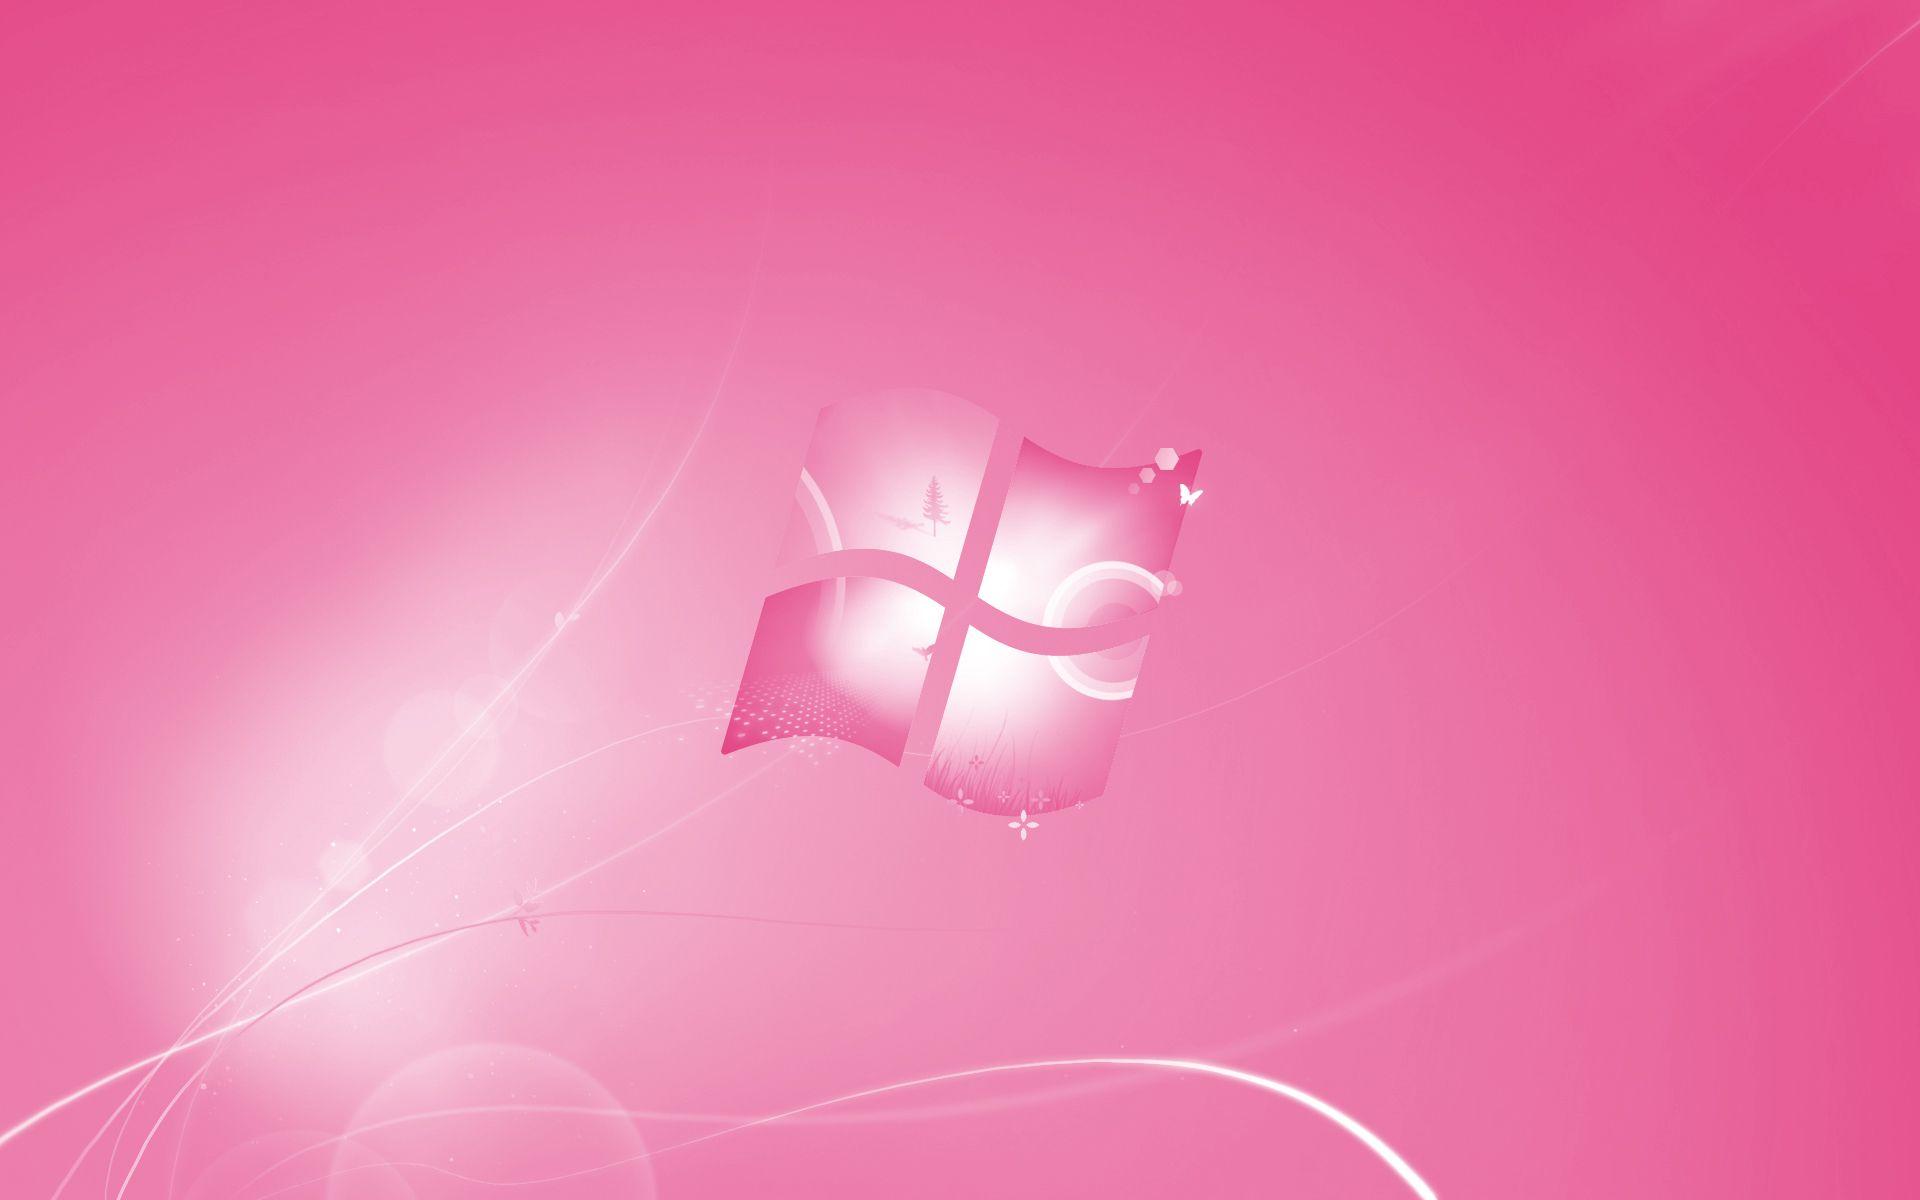 Với phong cách trẻ trung và nữ tính, nền hồng Windows 7 miễn phí là lựa chọn tuyệt vời cho các cô gái và những người yêu thích sắc hồng. Hình ảnh rực rỡ này sẽ giúp cho máy tính của bạn trở nên sinh động và đầy sức sống. Tải ngay không tính phí và tạo cho mình một không gian làm việc mới lạ.